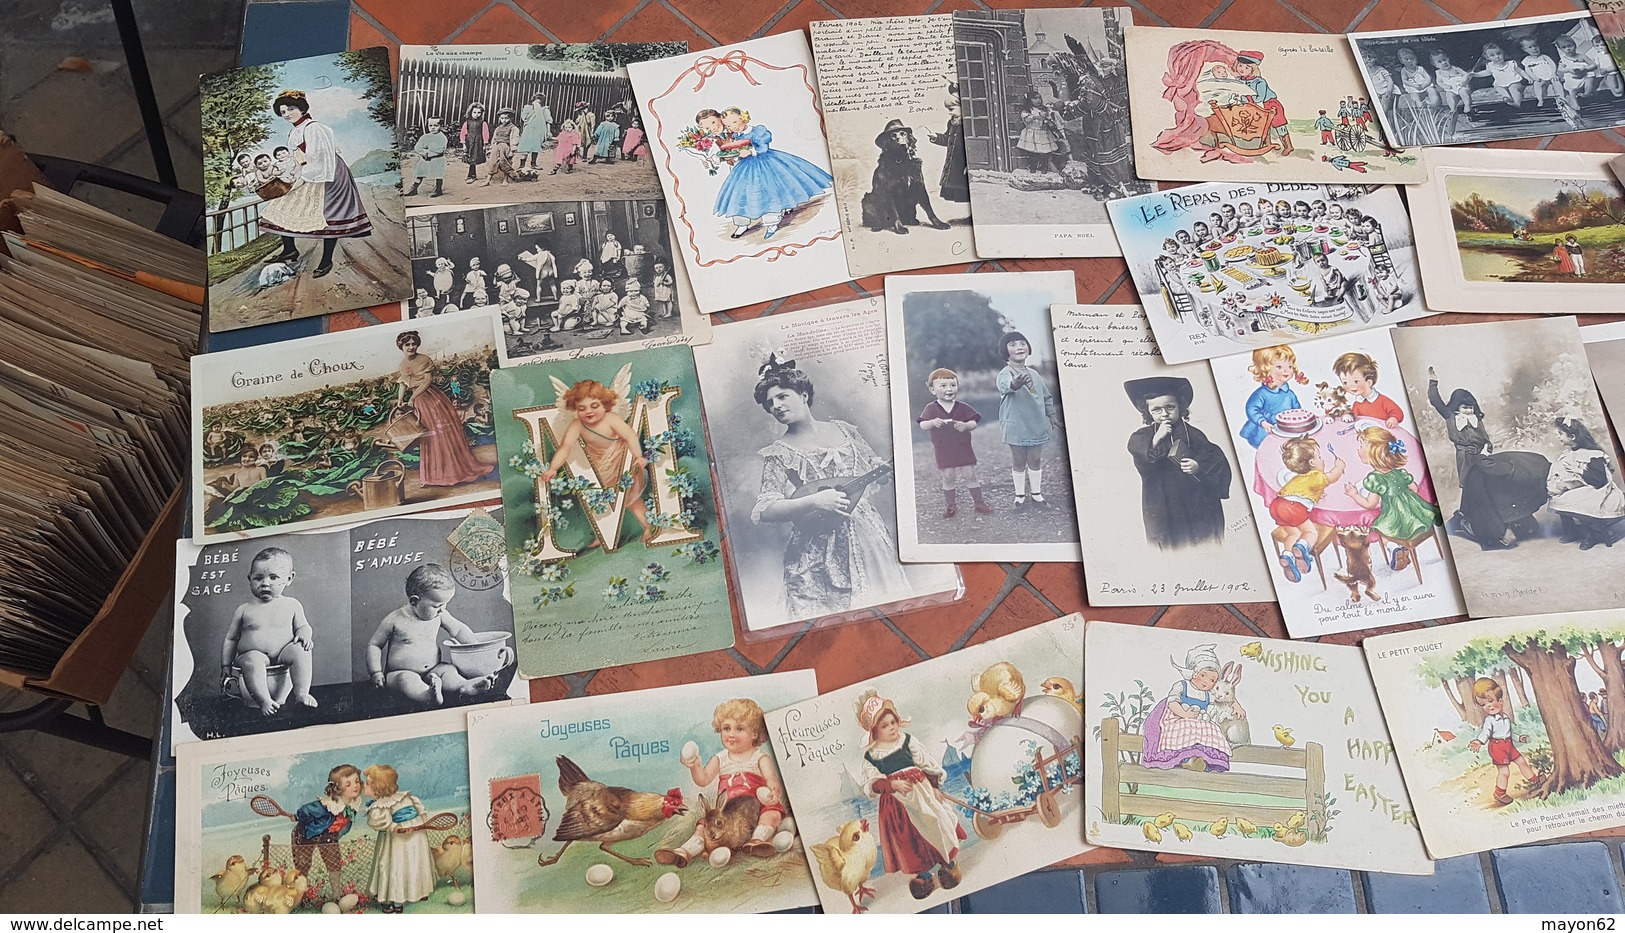 Lot + de 600 cartes anciennes PIN UP WOMEN bébés multiples enfants femmes illustrateurs séries mode publicités.. à voir